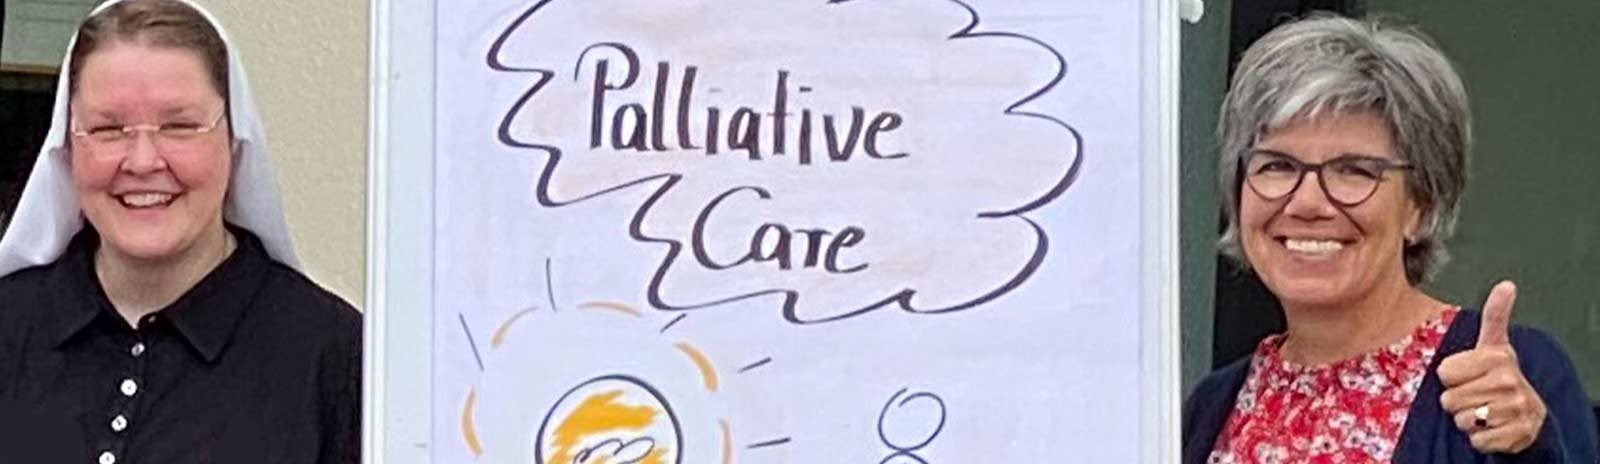 2020_08_26_Akademie_Palliative-Care_slider